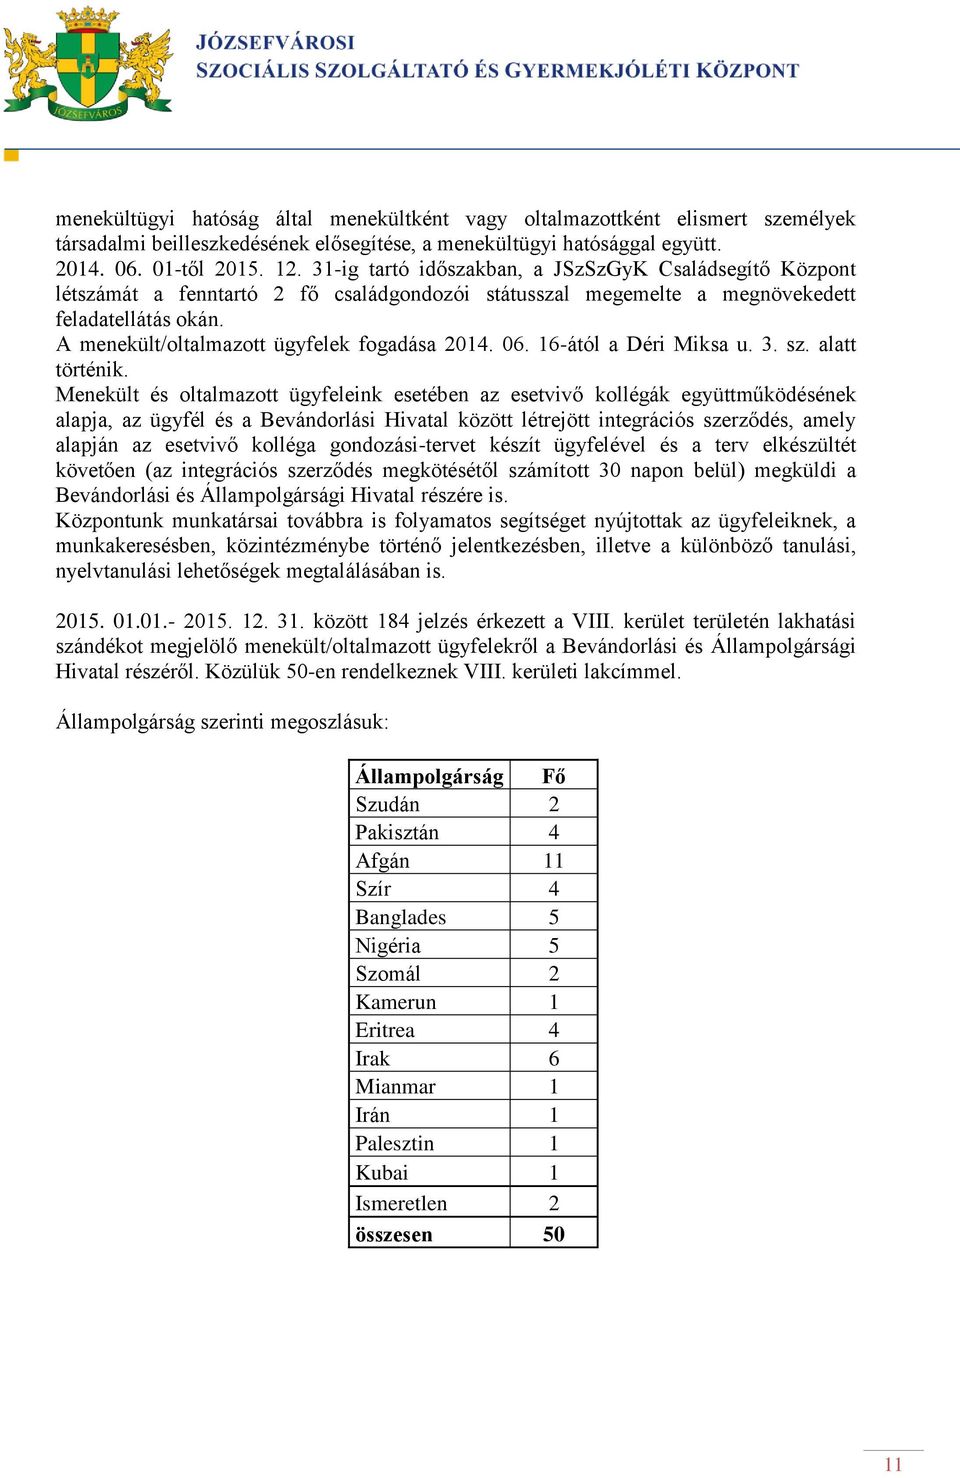 A menekült/oltalmazott ügyfelek fogadása 2014. 06. 16-ától a Déri Miksa u. 3. sz. alatt történik.